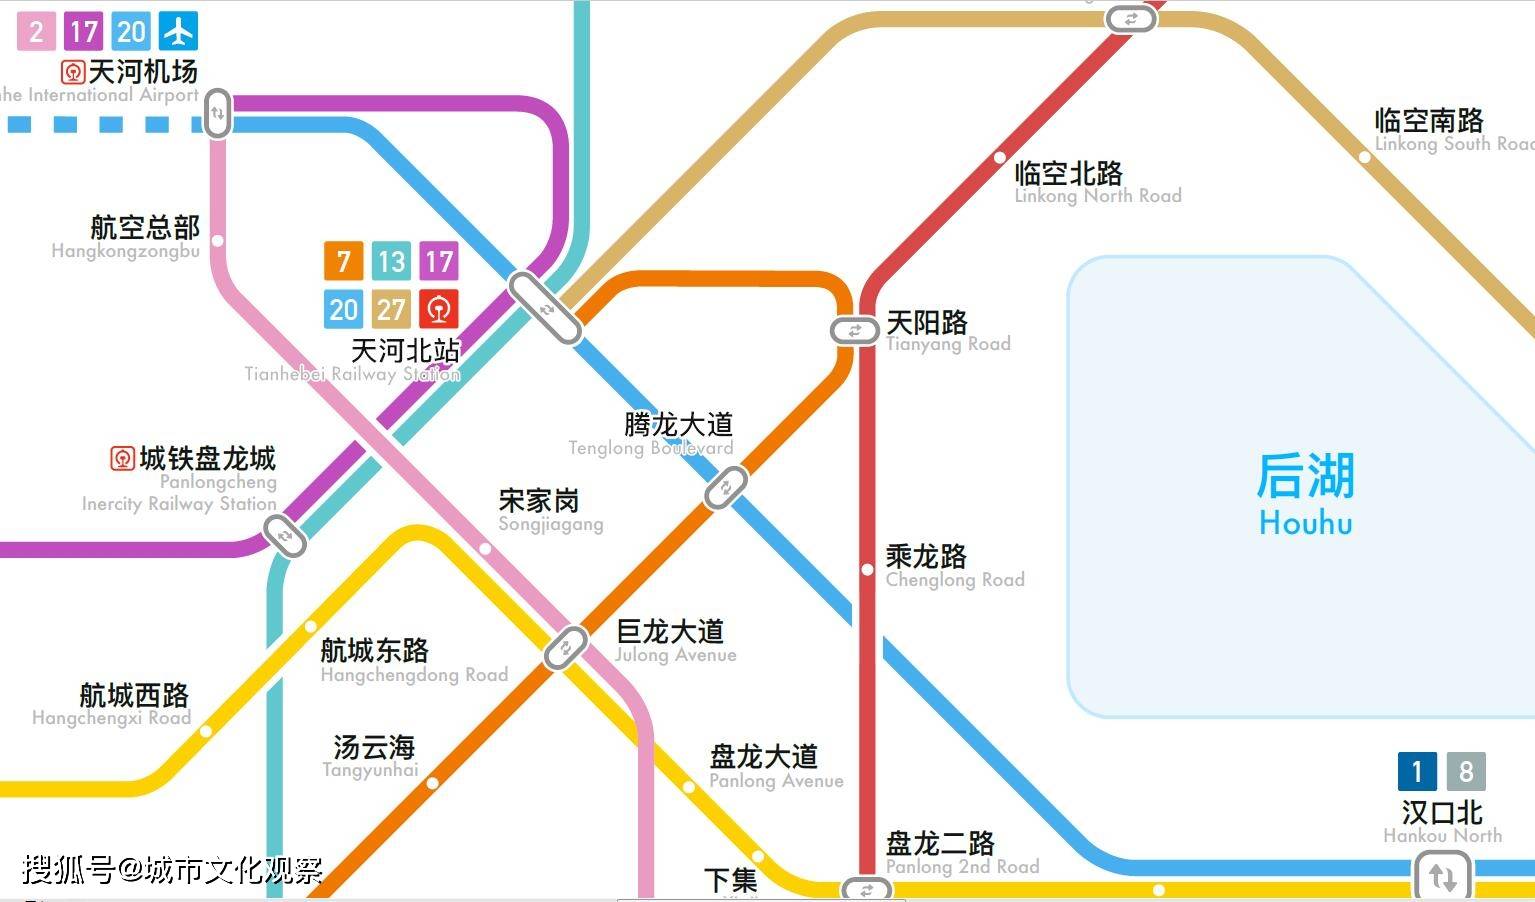 武汉轨道交通20号线(长江新区过江通道)的大致走向:自南向北始于武汉